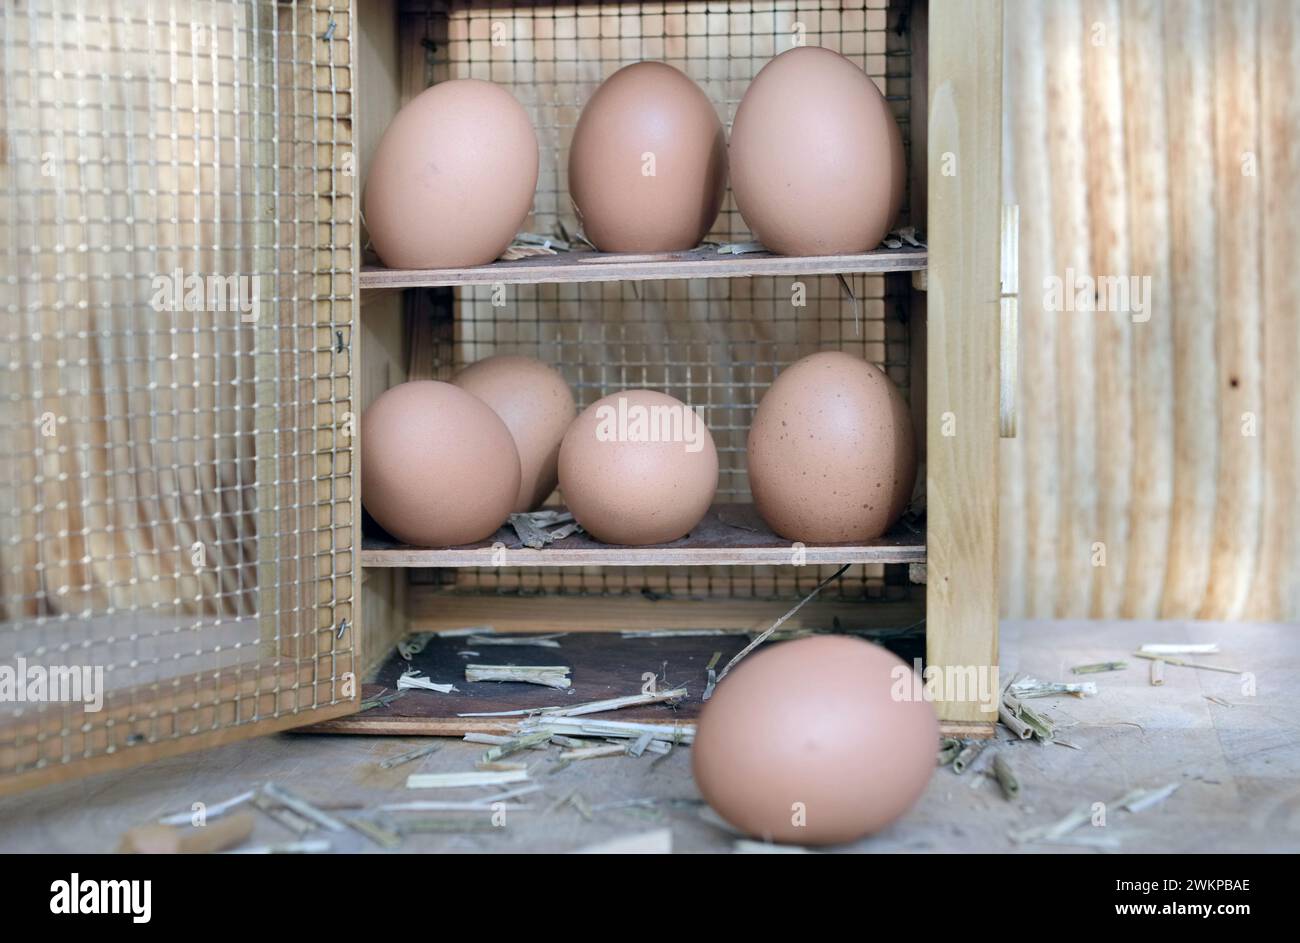 Vorderansicht auf Hühnereier in einer rustikalen Box, die auf hölzernem Hintergrund geöffnet ist Stockfoto